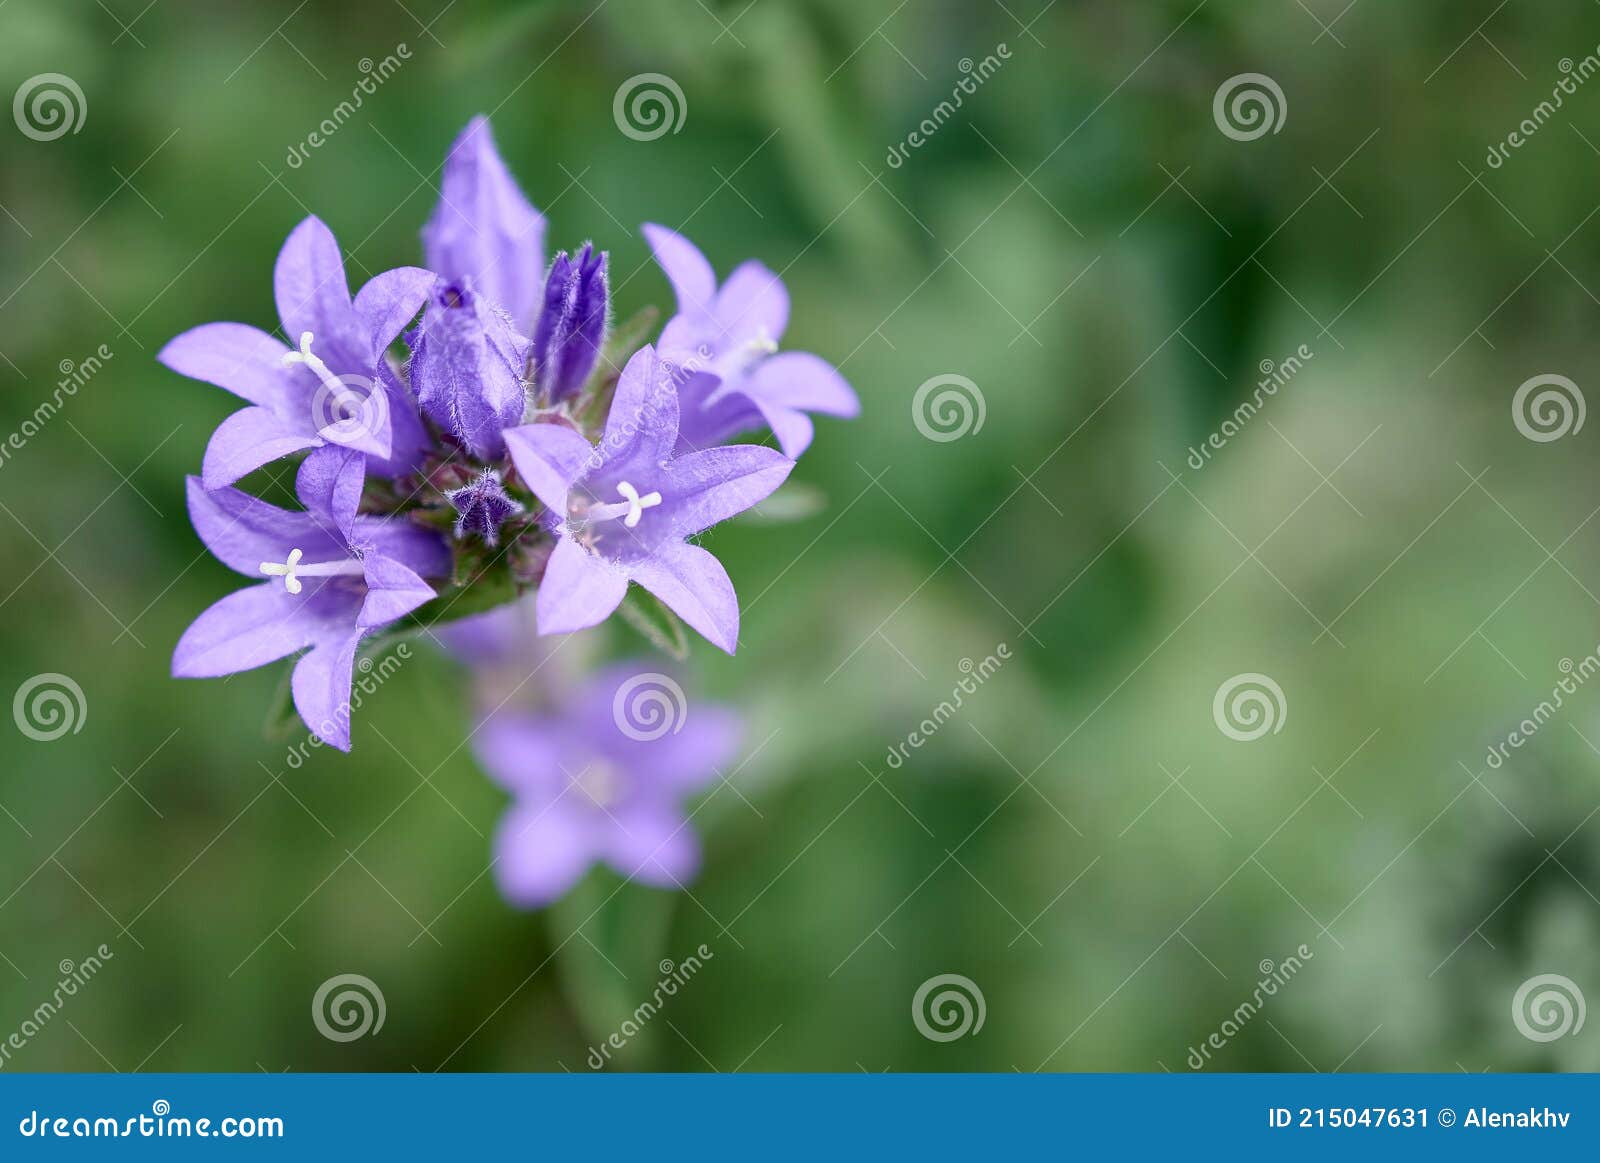 Macro De Fleur Violette De Campanula Glomerata Danes En Grappe. Délicates Fleurs  Violettes Sur Un Vert Flou Image stock - Image du jardin, sang: 215047631